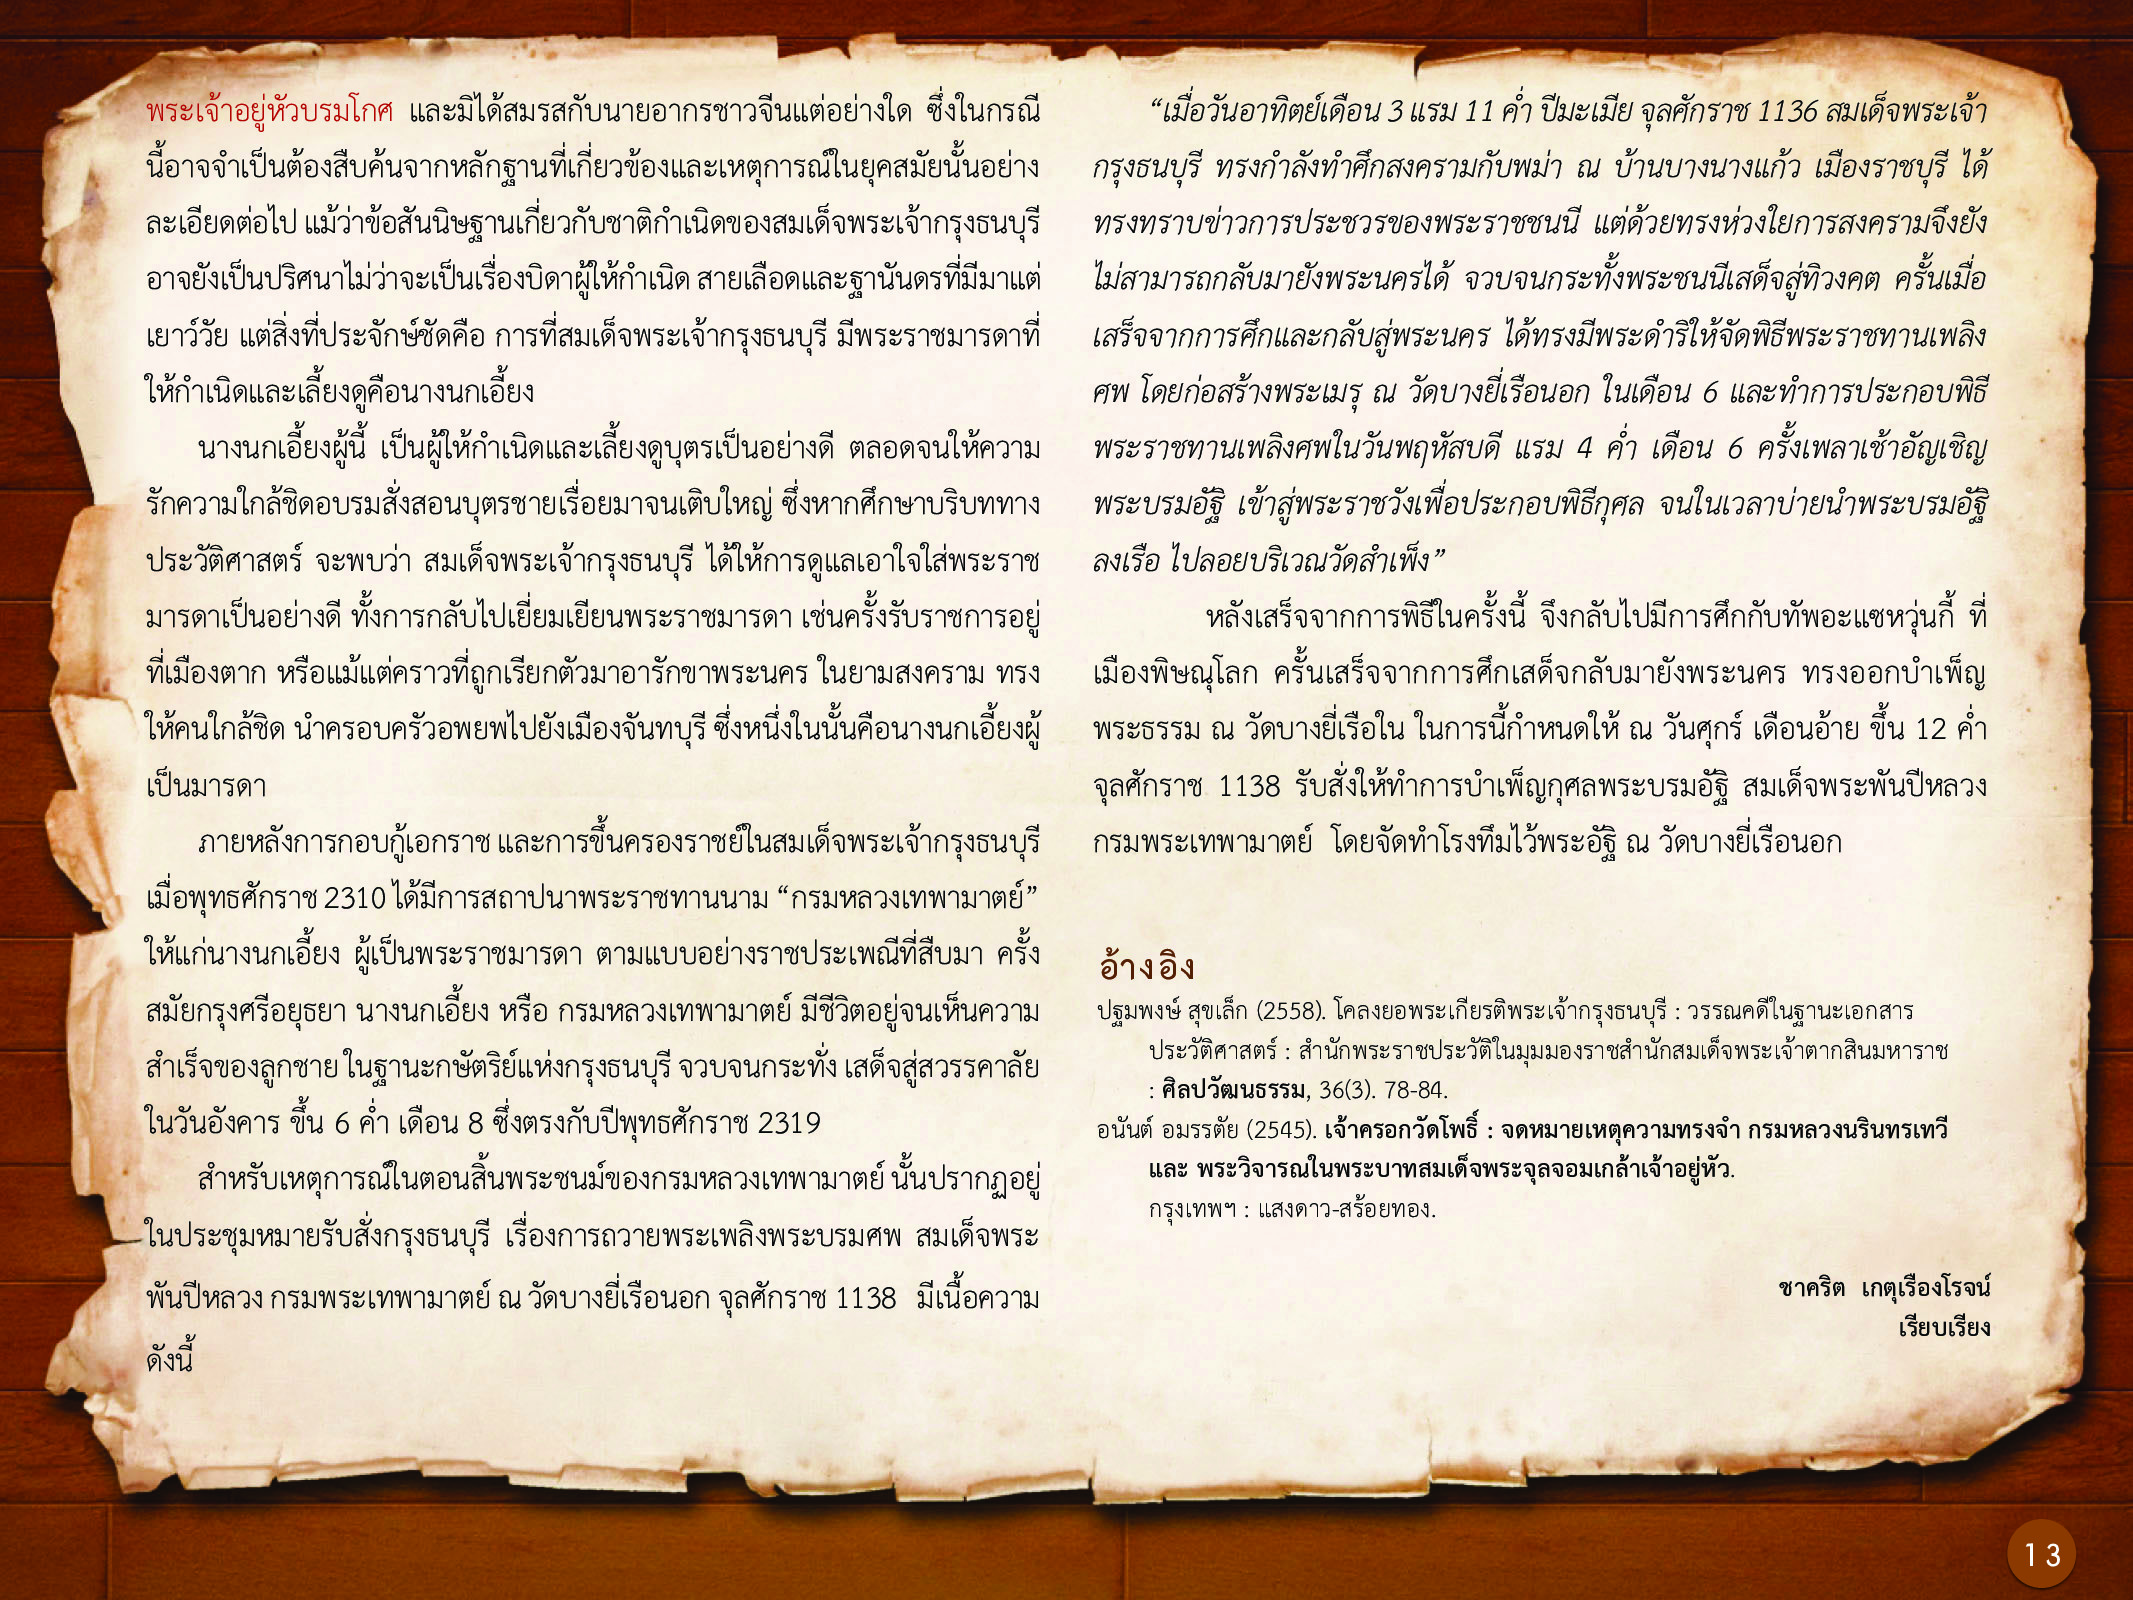 ประวัติศาสตร์กรุงธนบุรี ./images/history_dhonburi/13.jpg